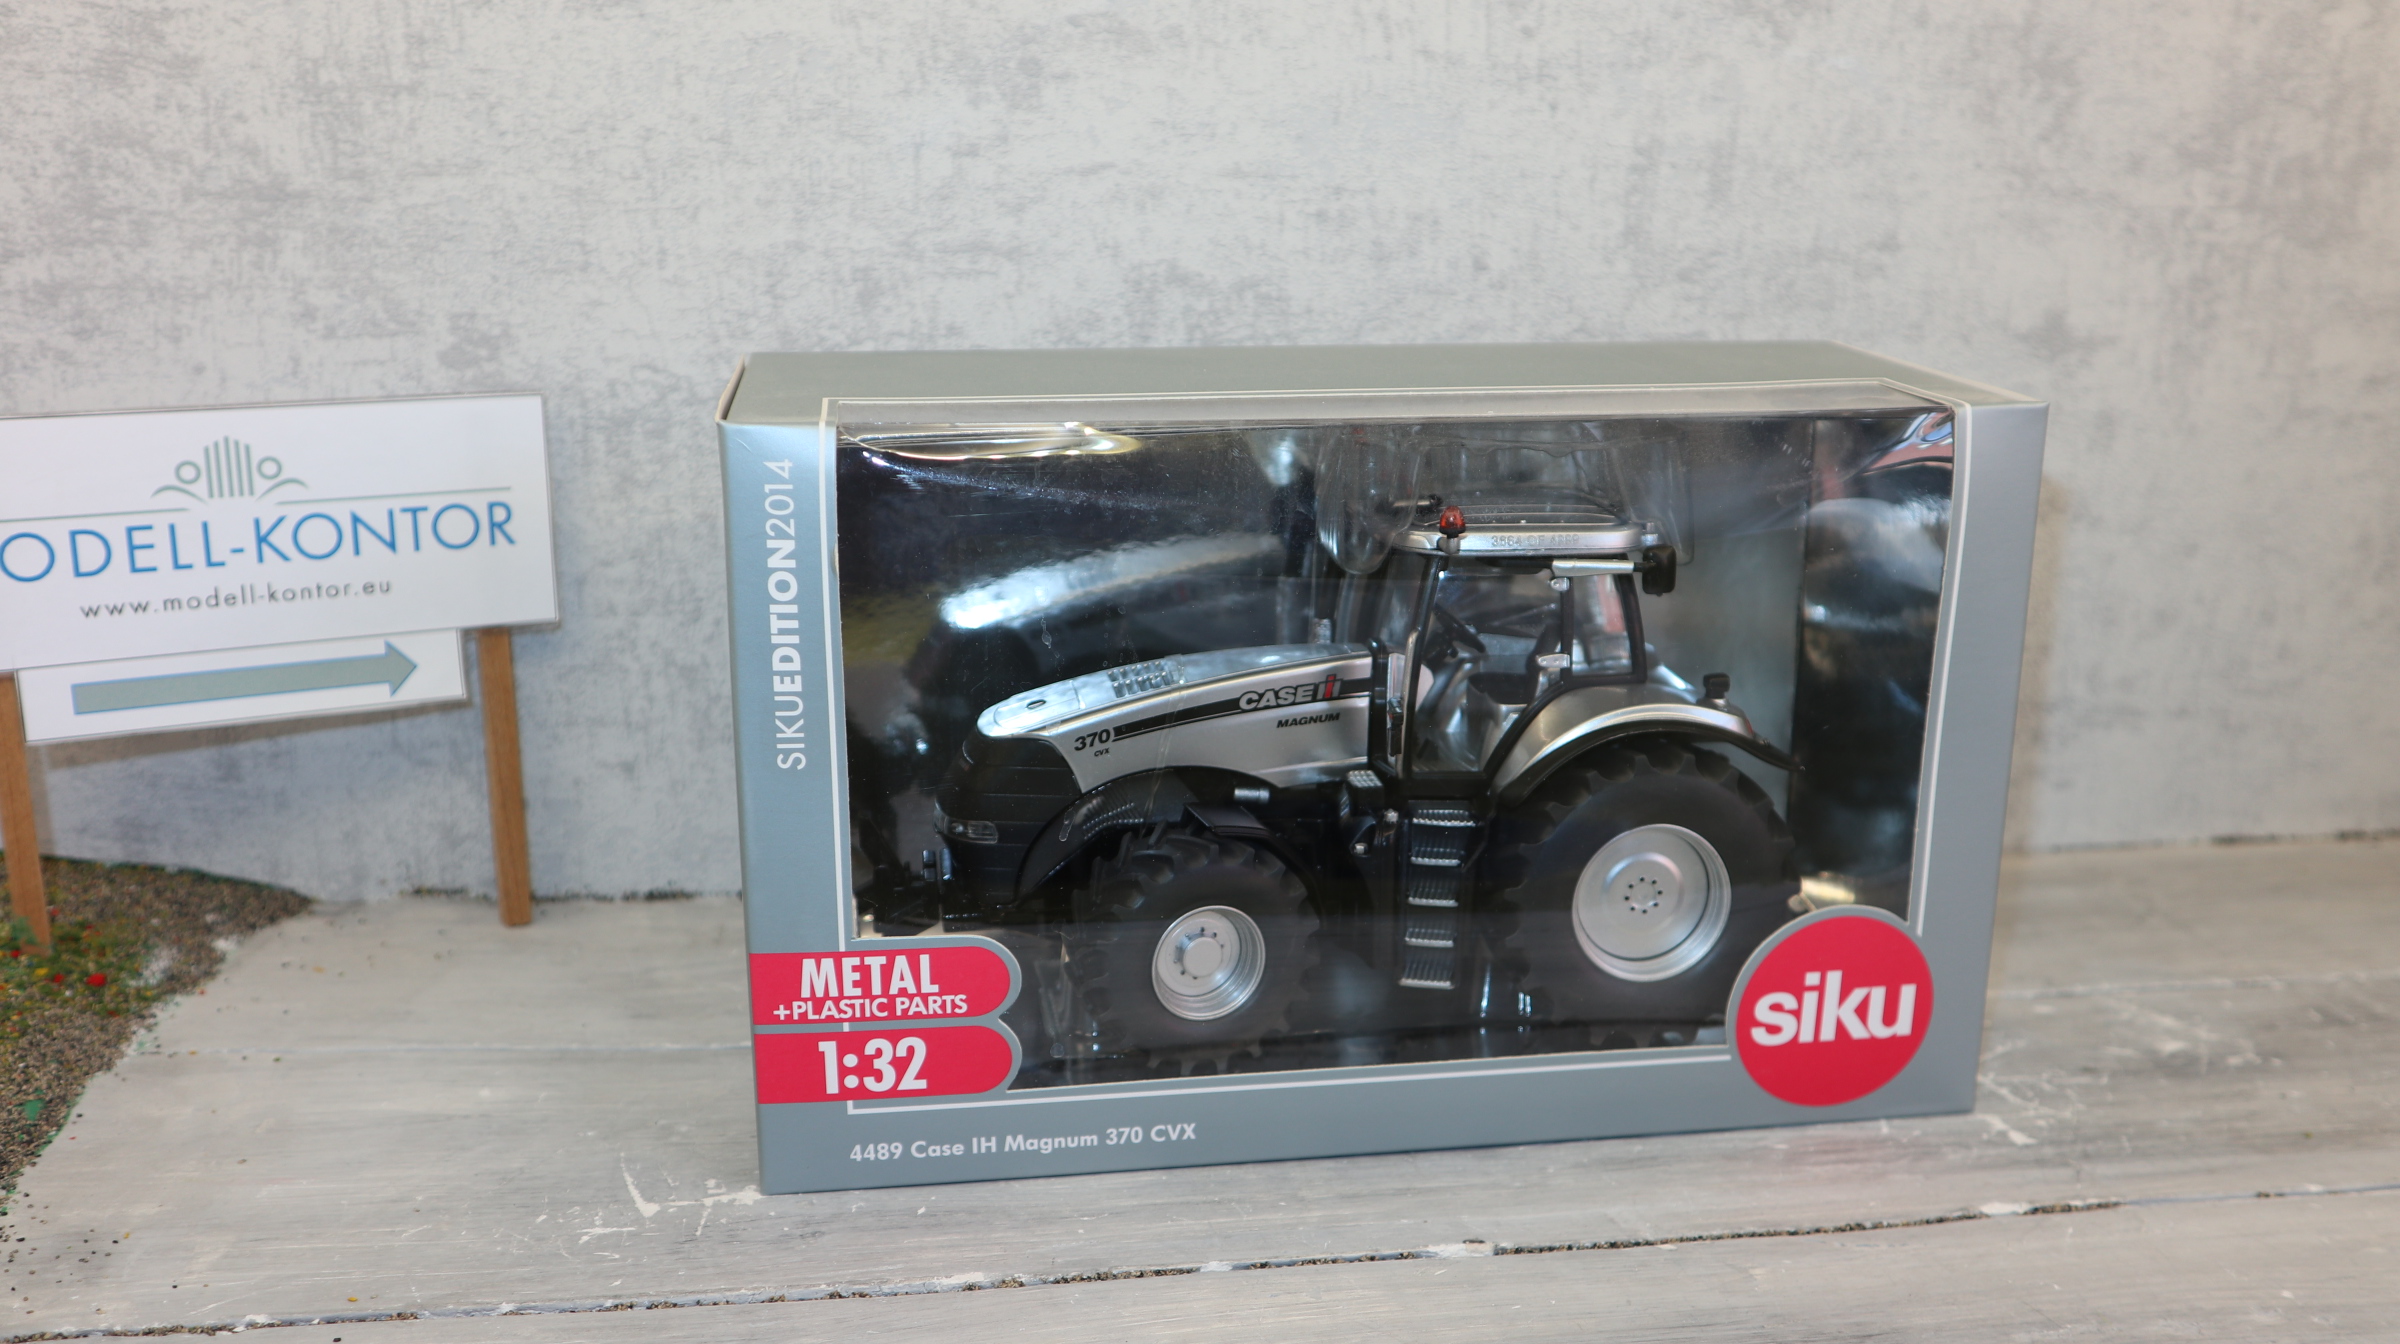 Siku 4489 in 1:32 CASE IH Magnum 370, Sondermodell Silverline, Edition 2014, NEU in OVP